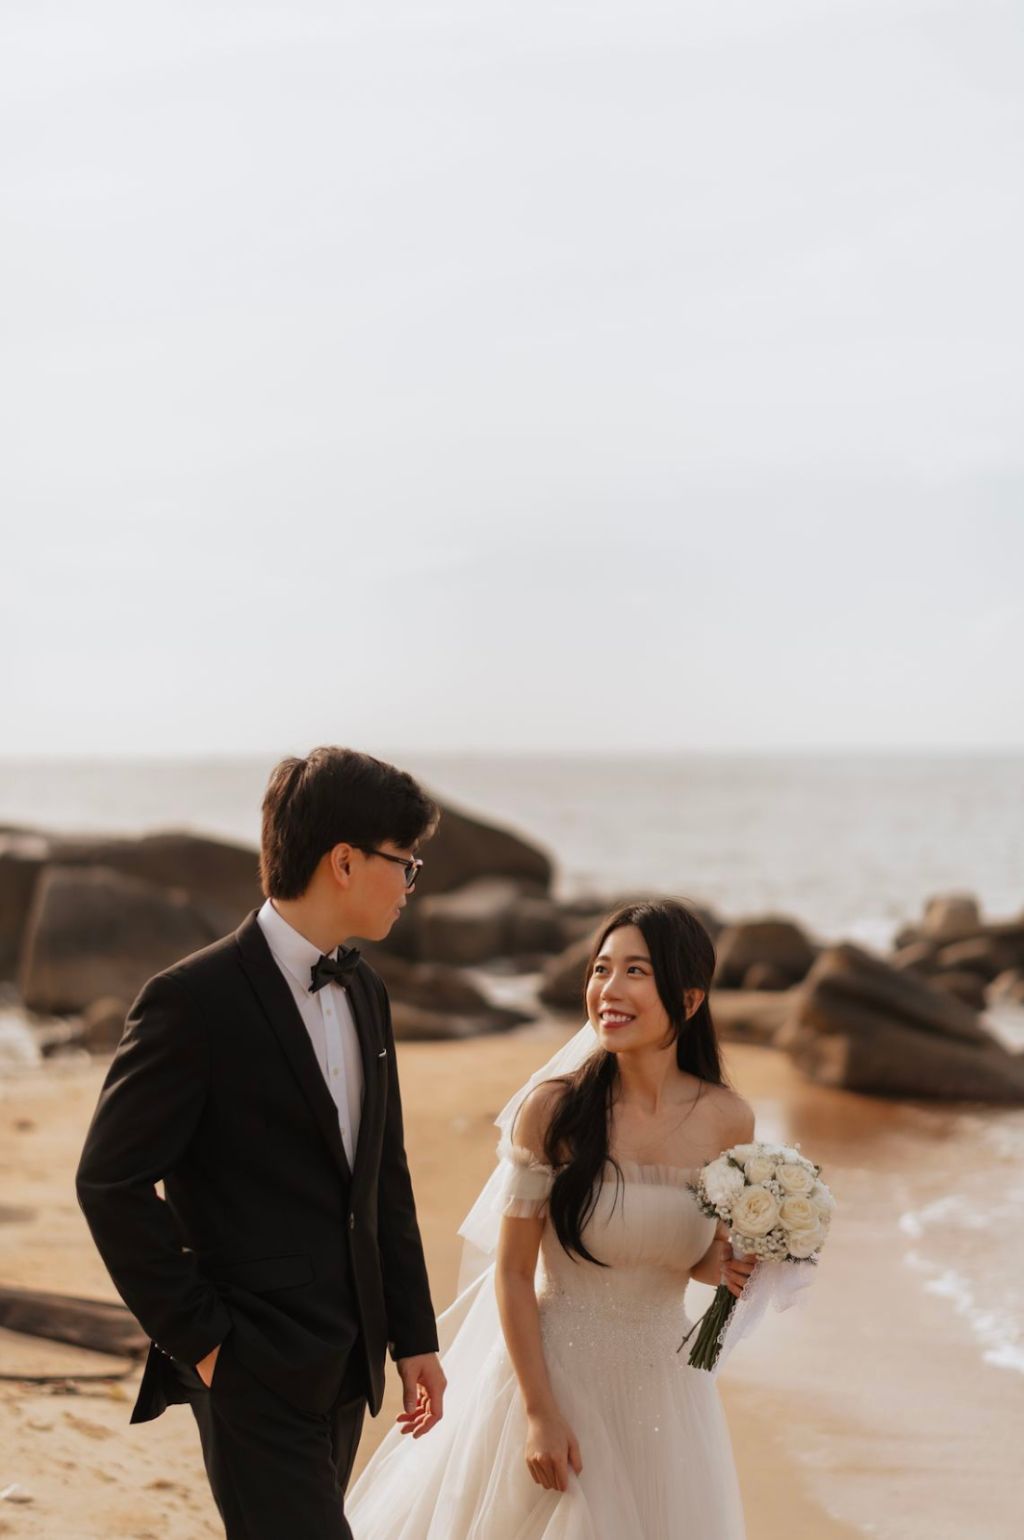 KN Wedding – Đa dạng phong cách chụp ảnh cưới